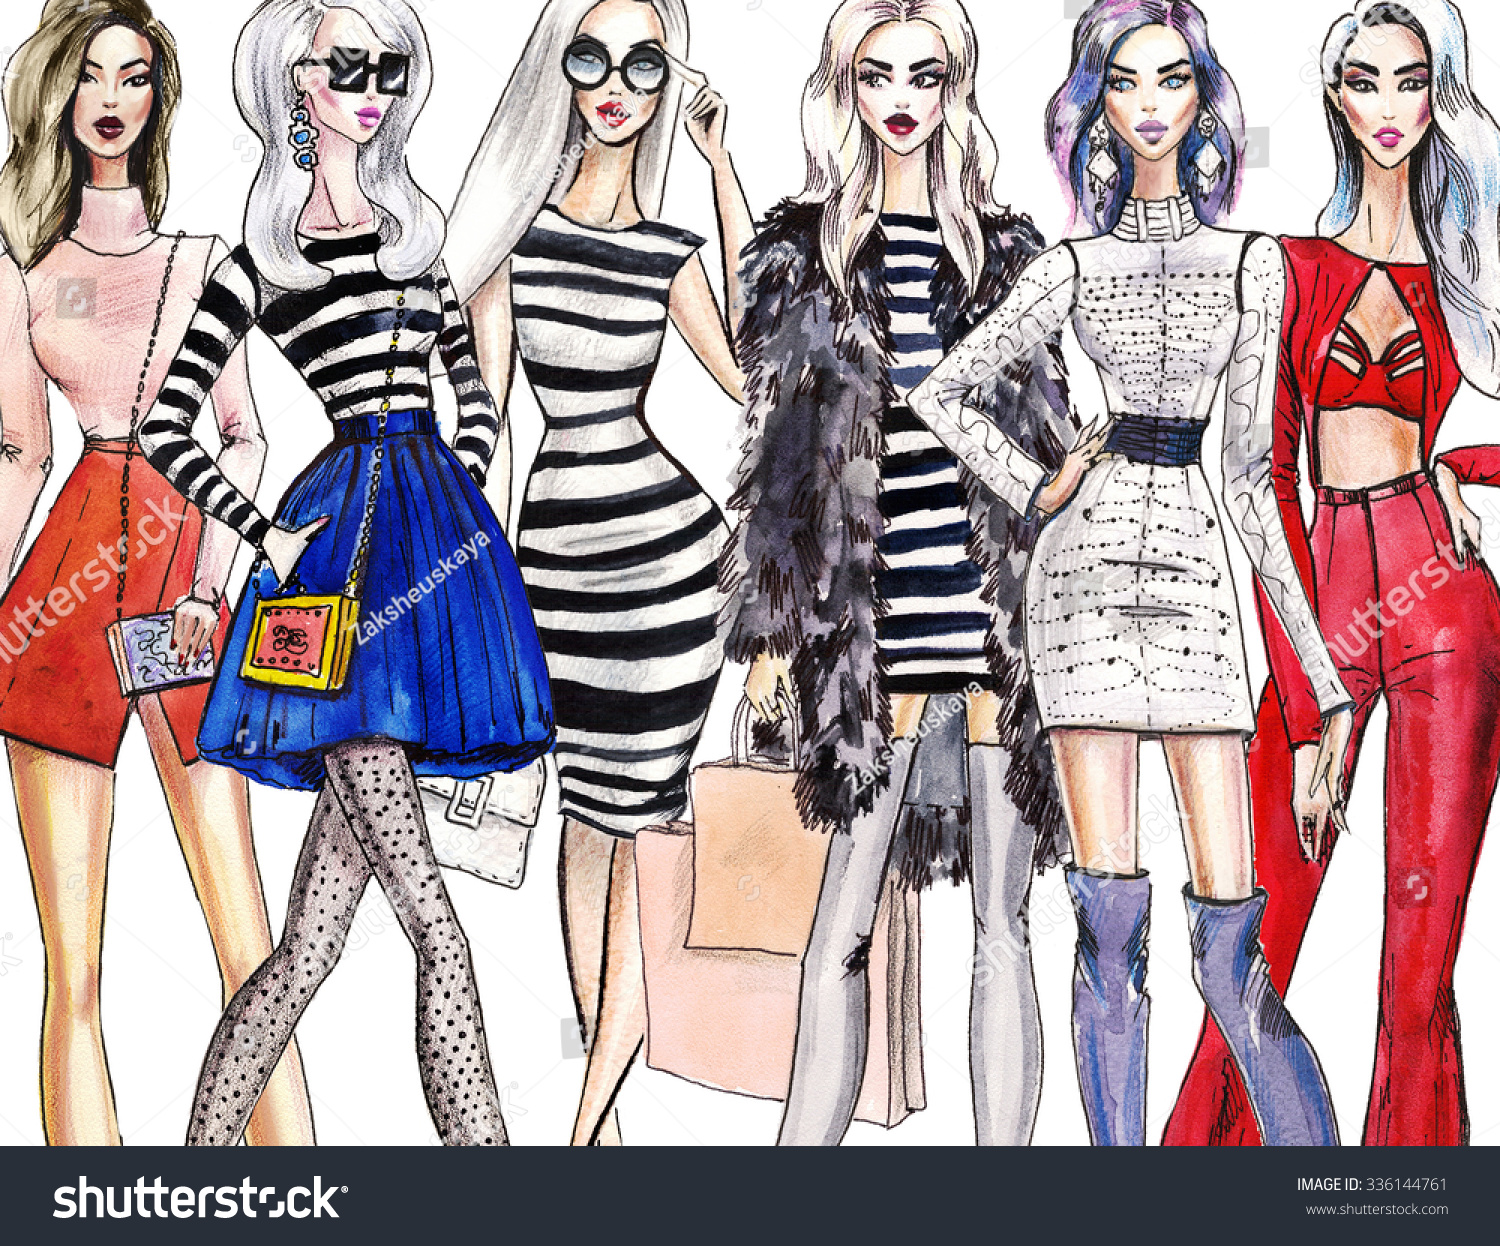 Illustration Fashionable Girls Shopping Fashion Illustration Stock ...